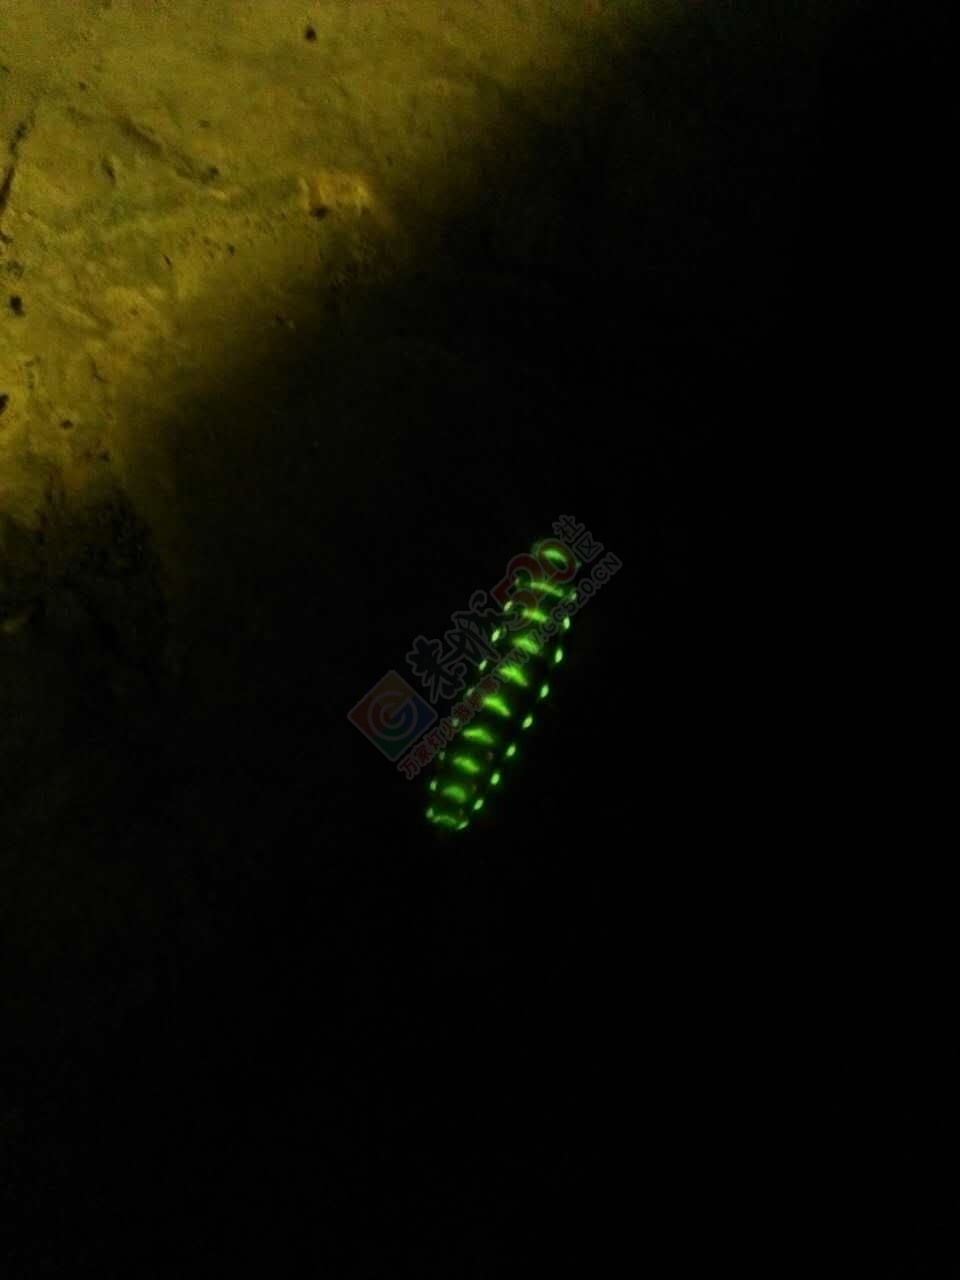 在三江黄坪发现一条蚕虫，居然全身会发光。。。92 / 作者:三江黄坪 / 帖子ID:232150